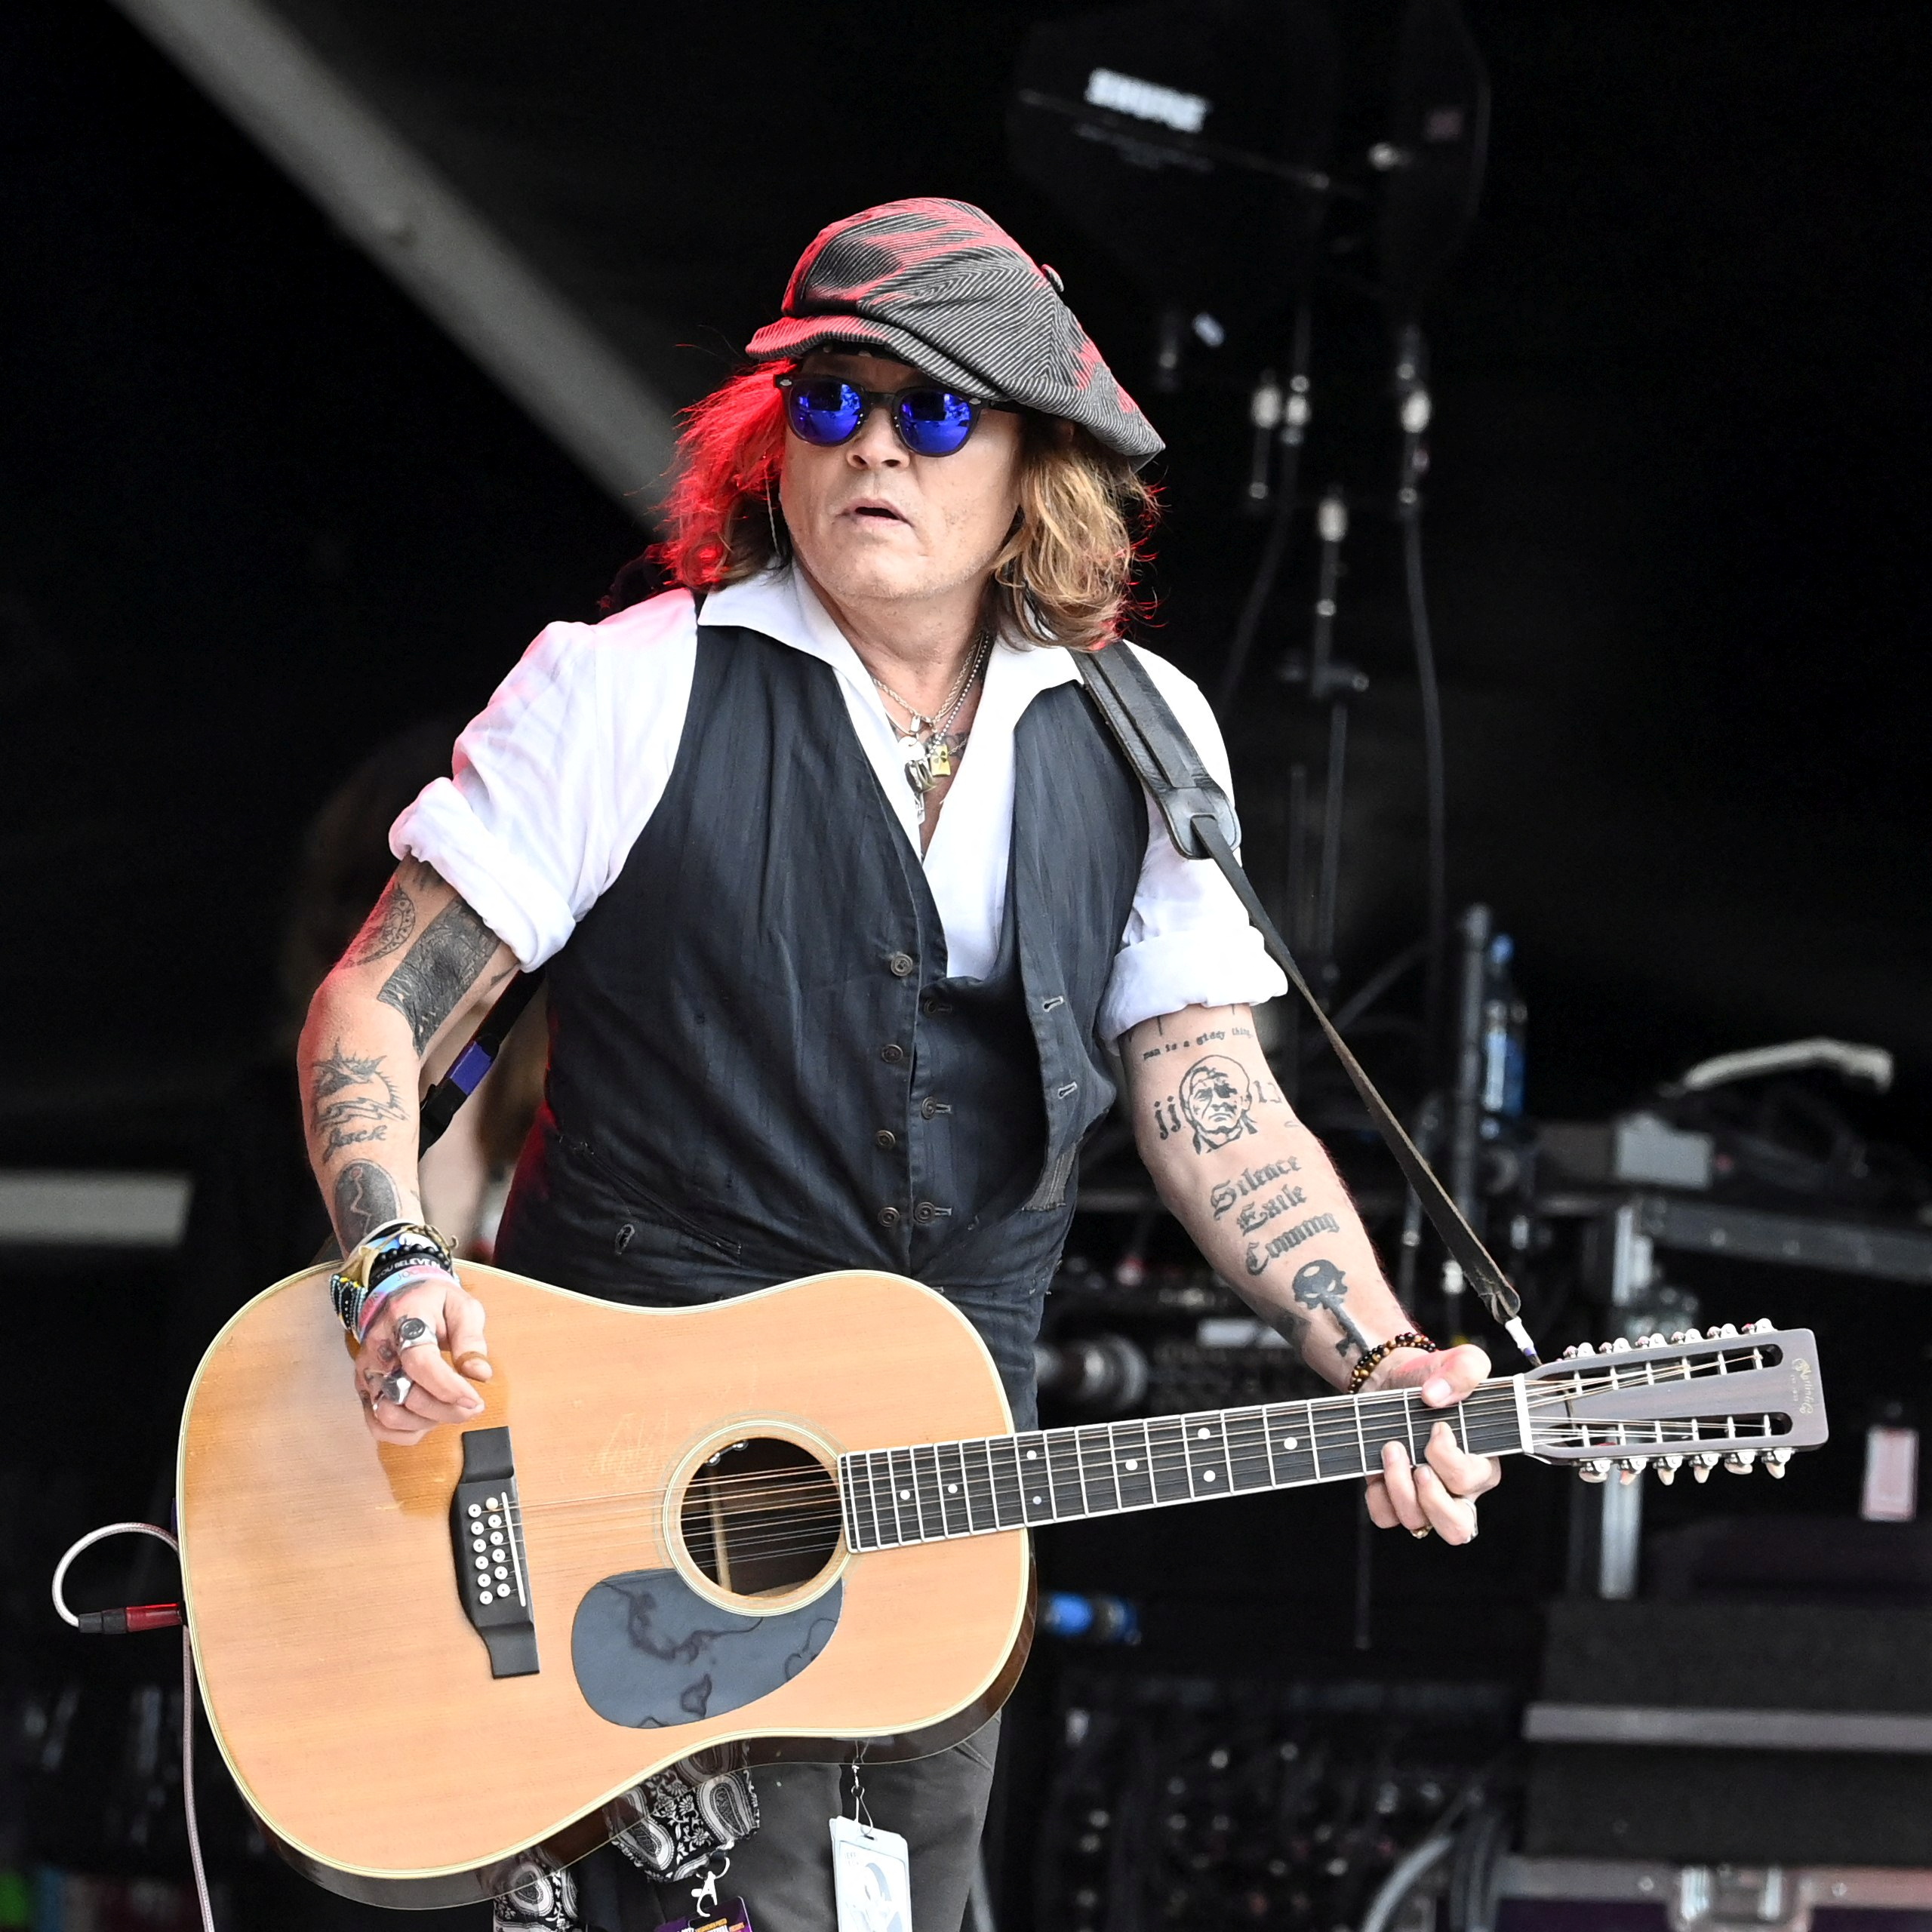 Johnny Depp, mientras tanto, planea sacar un disco de rock (Lehtikuva/Jussi Nukari via REUTERS)